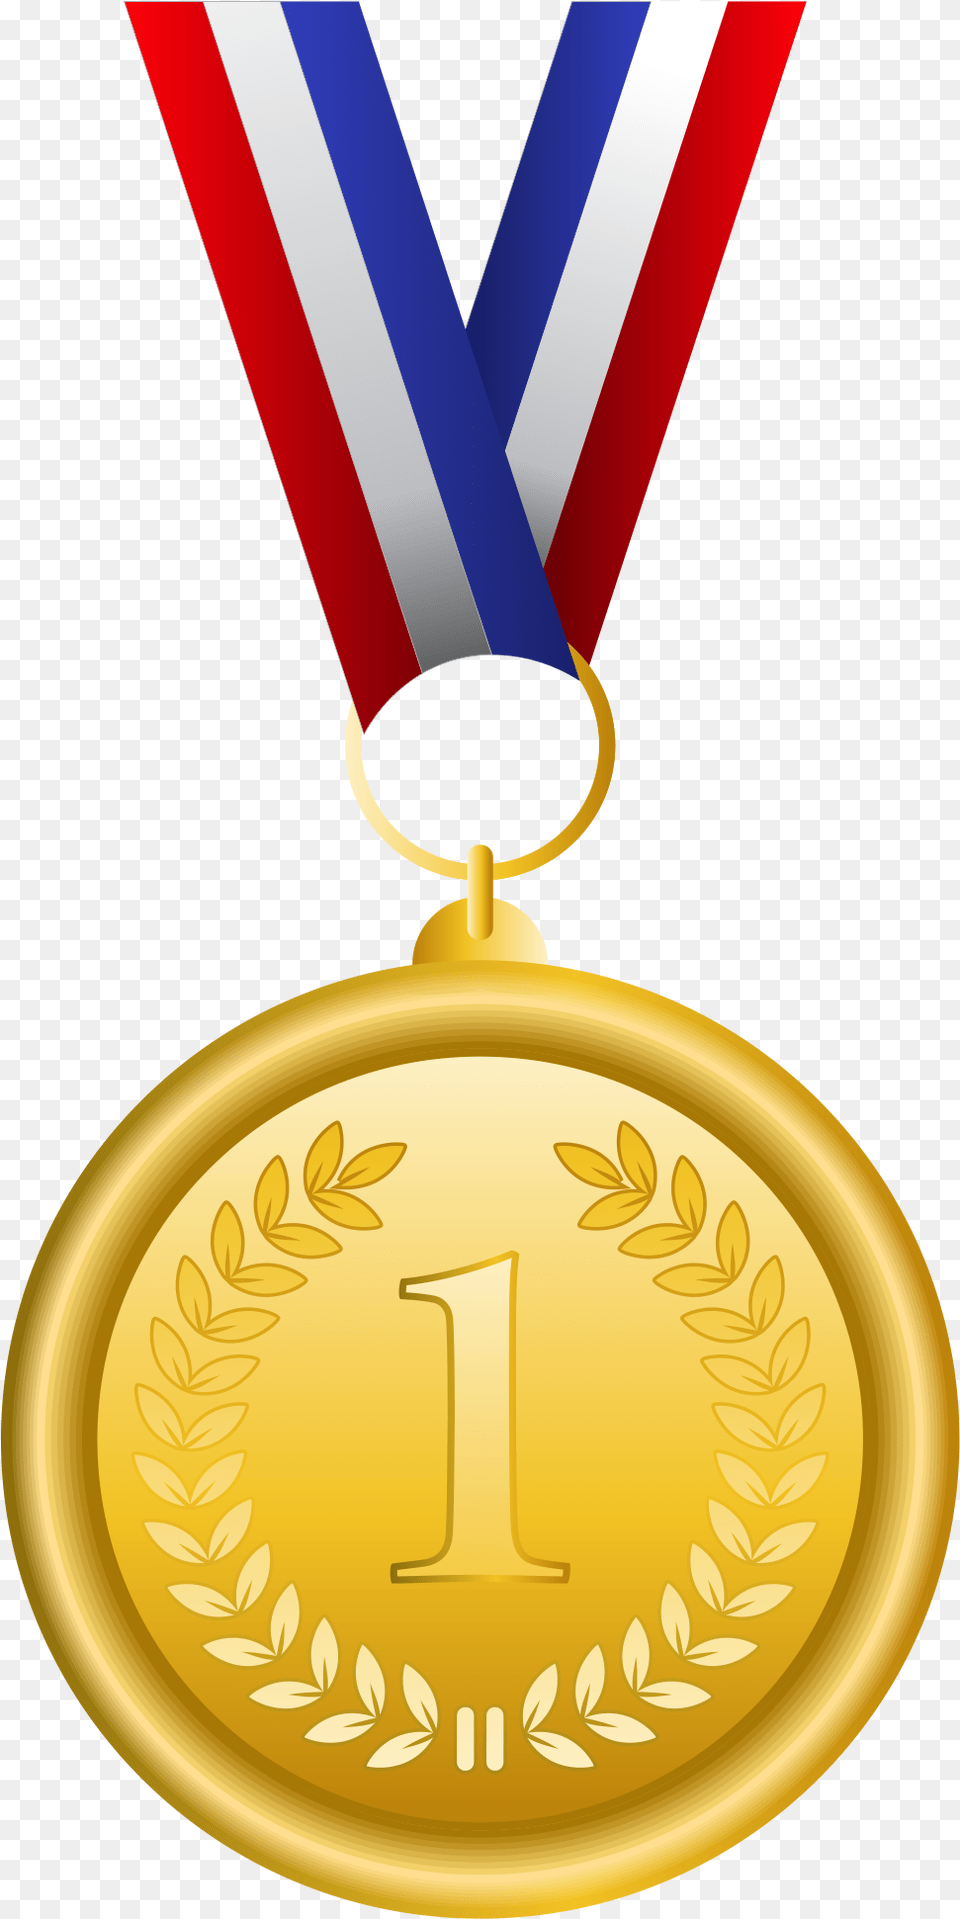 Gold Medal Olympic Medal Bronze Medal Clip Art Olympic Gold Medal Clipart, Gold Medal, Trophy Free Transparent Png